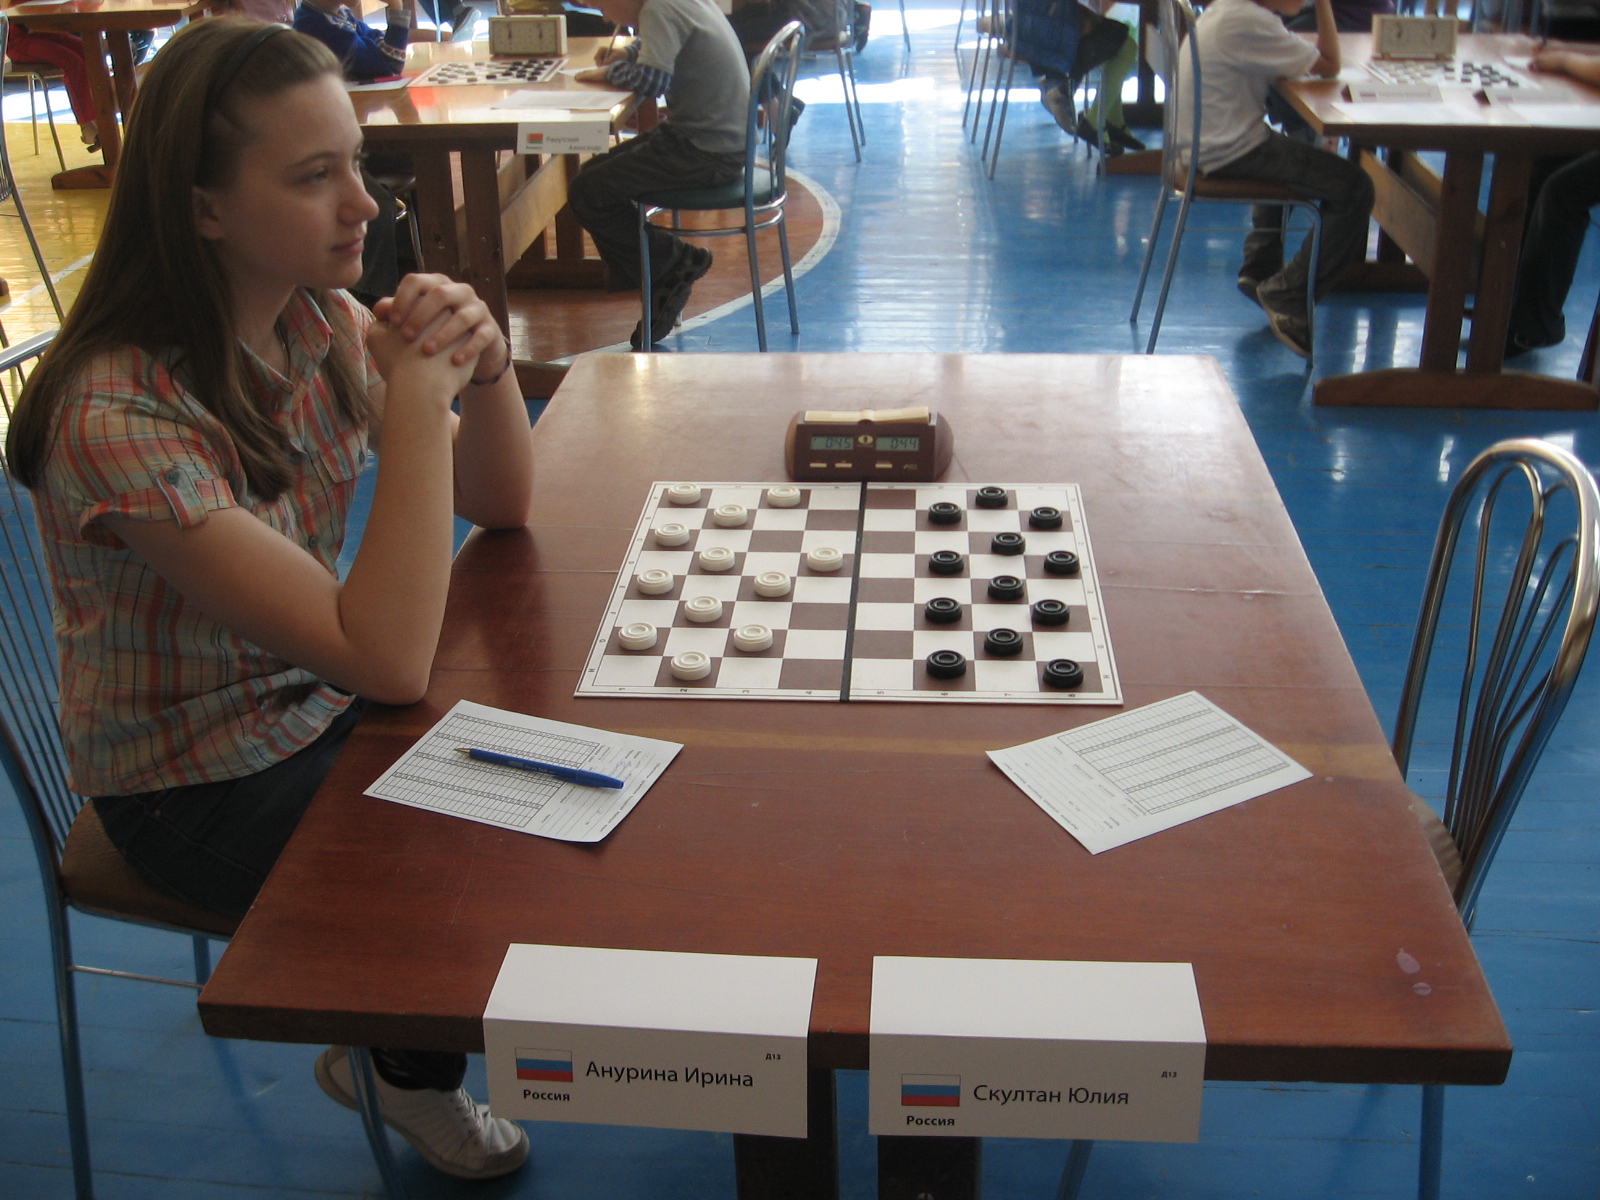 Нажмите для просмотра картинки в полный размер -  Фотогалерея - Чемпионат(Первенство) Европы по шашкам -64 среди юношей и девушек. 2012(Борисов) - 2 й тур - 40.jpg